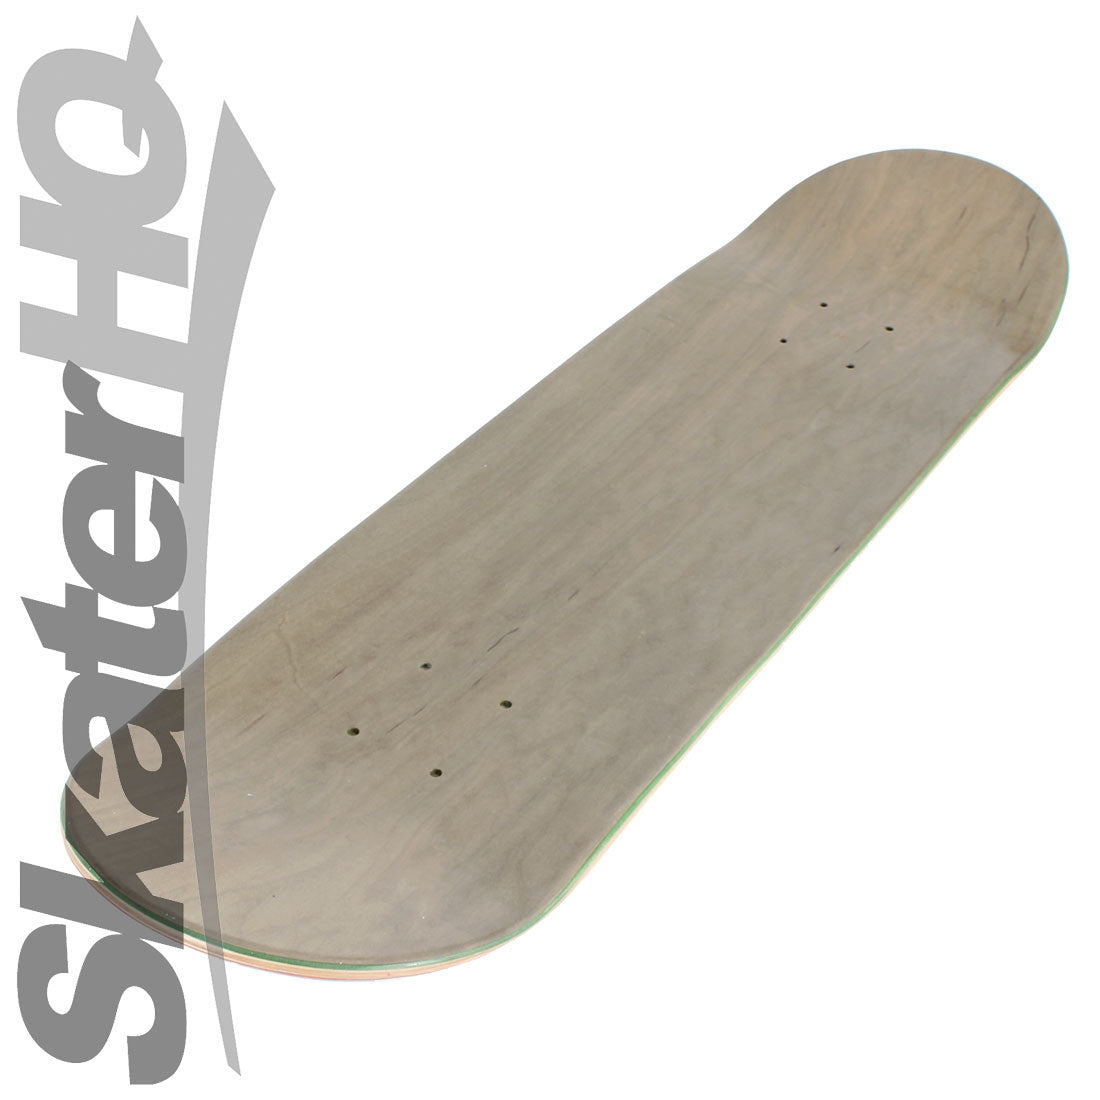 Skater HQ Shredding Time V2 7.75 Deck Skateboard Decks Modern Street